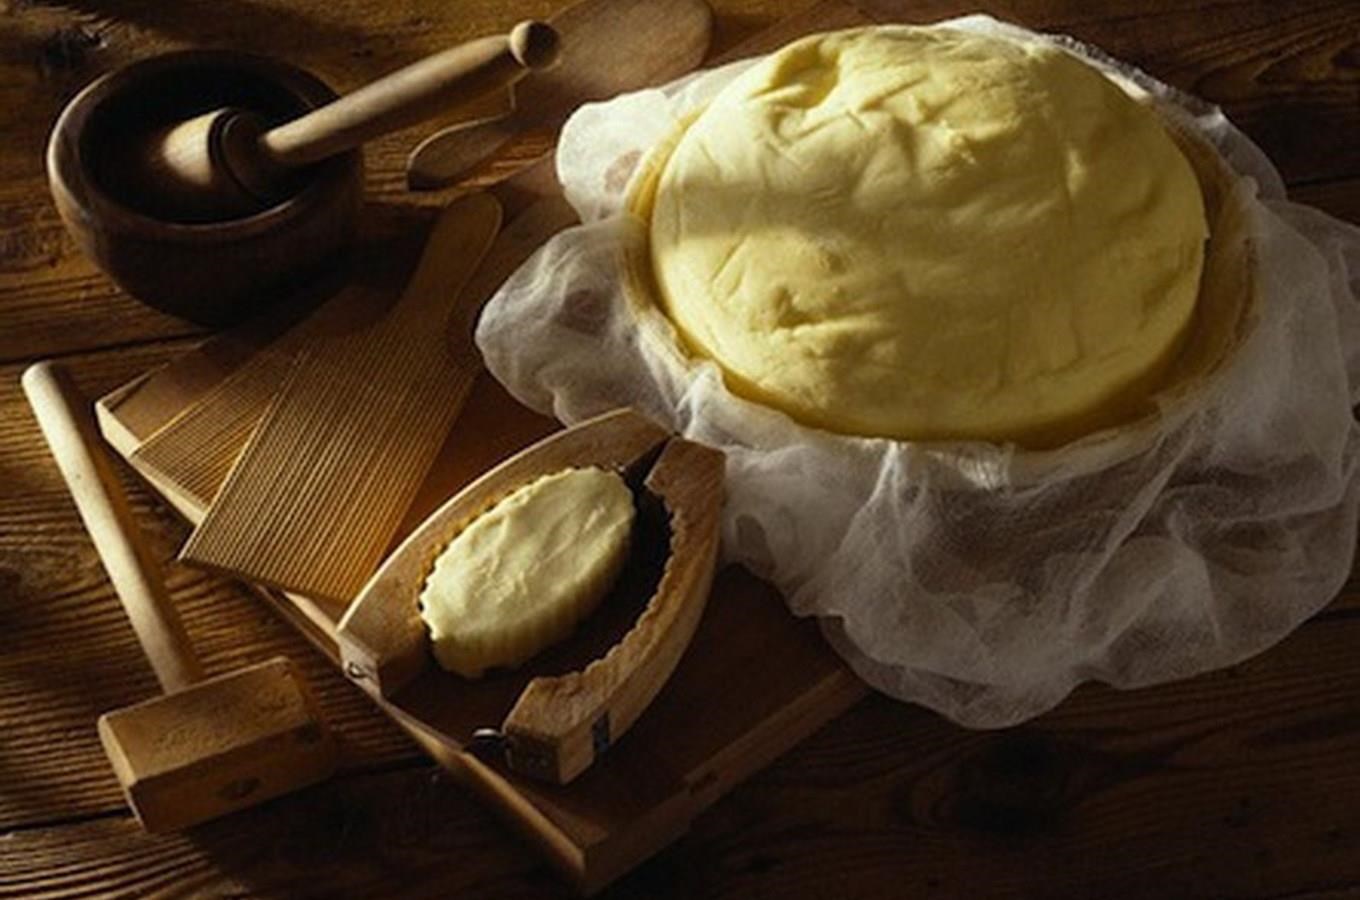 Máslovické muzeum másla